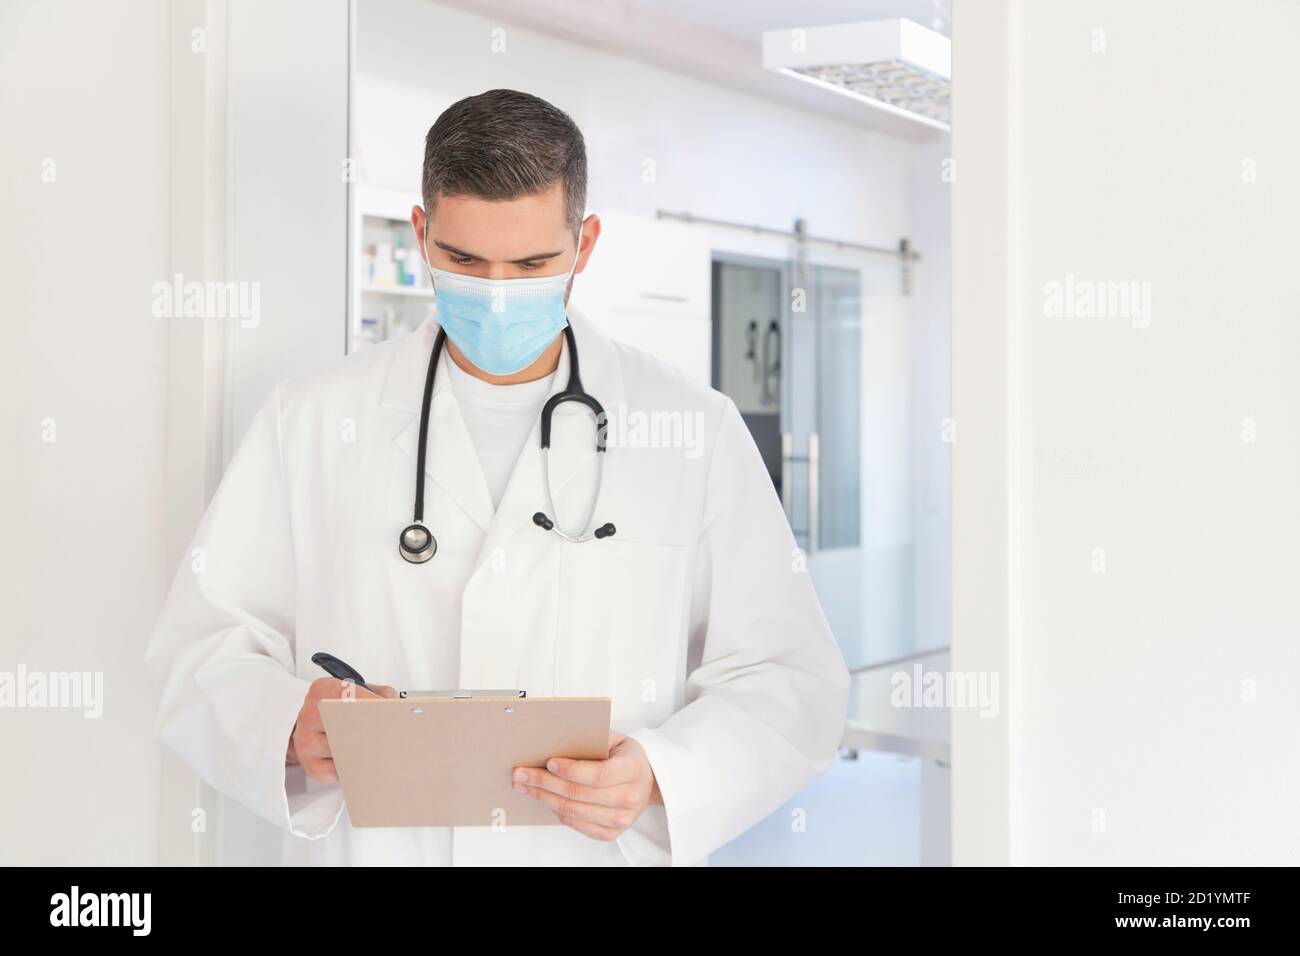 Junger Arzt mit OP-Maske vor der Operation nehmen Notizen - Fokus auf das Gesicht Stockfoto